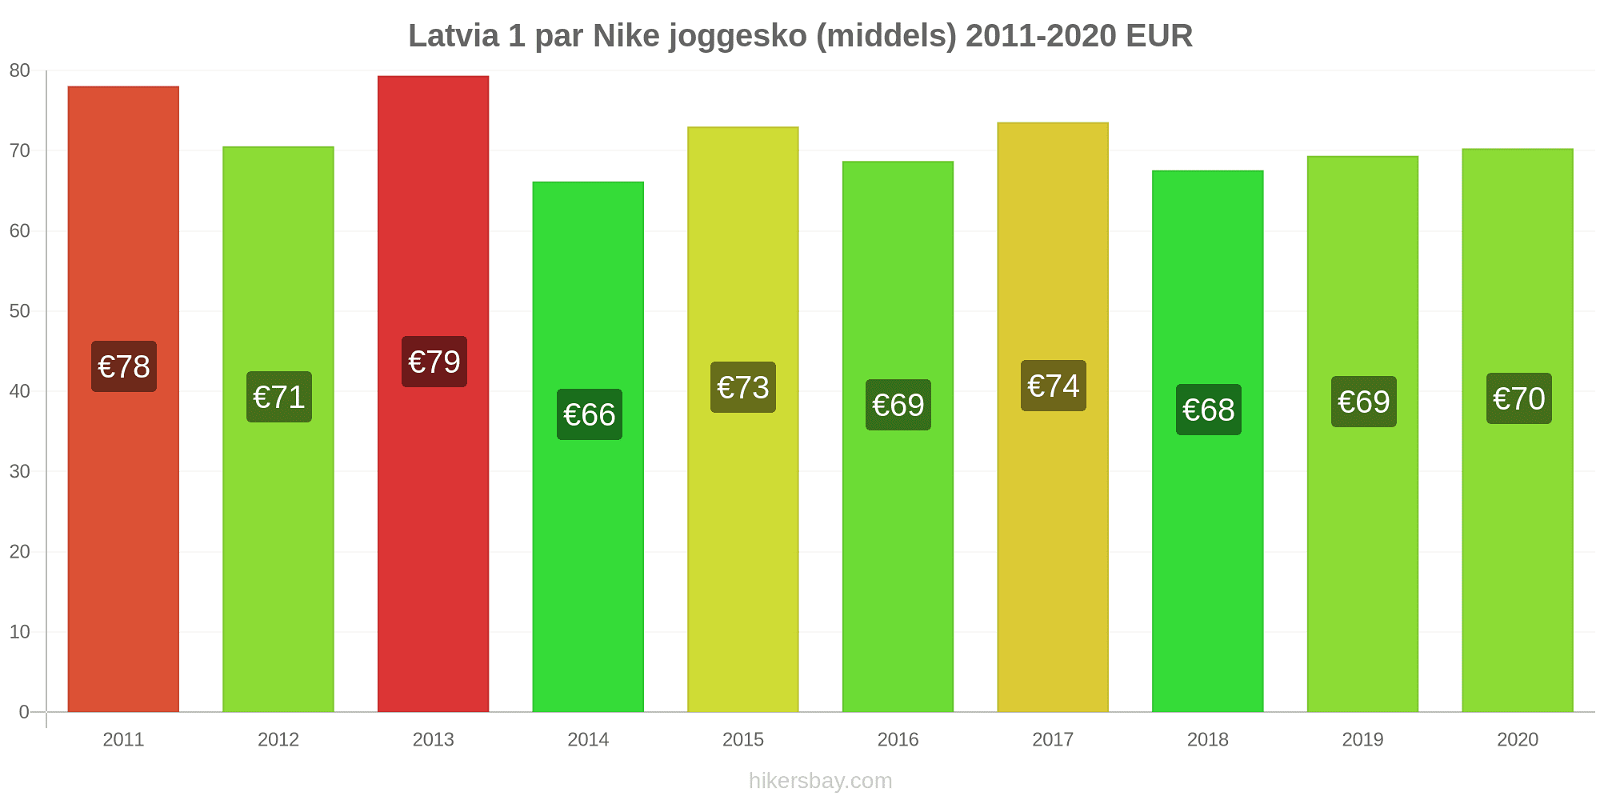 Latvia prisendringer 1 par Nike joggesko (middels) hikersbay.com